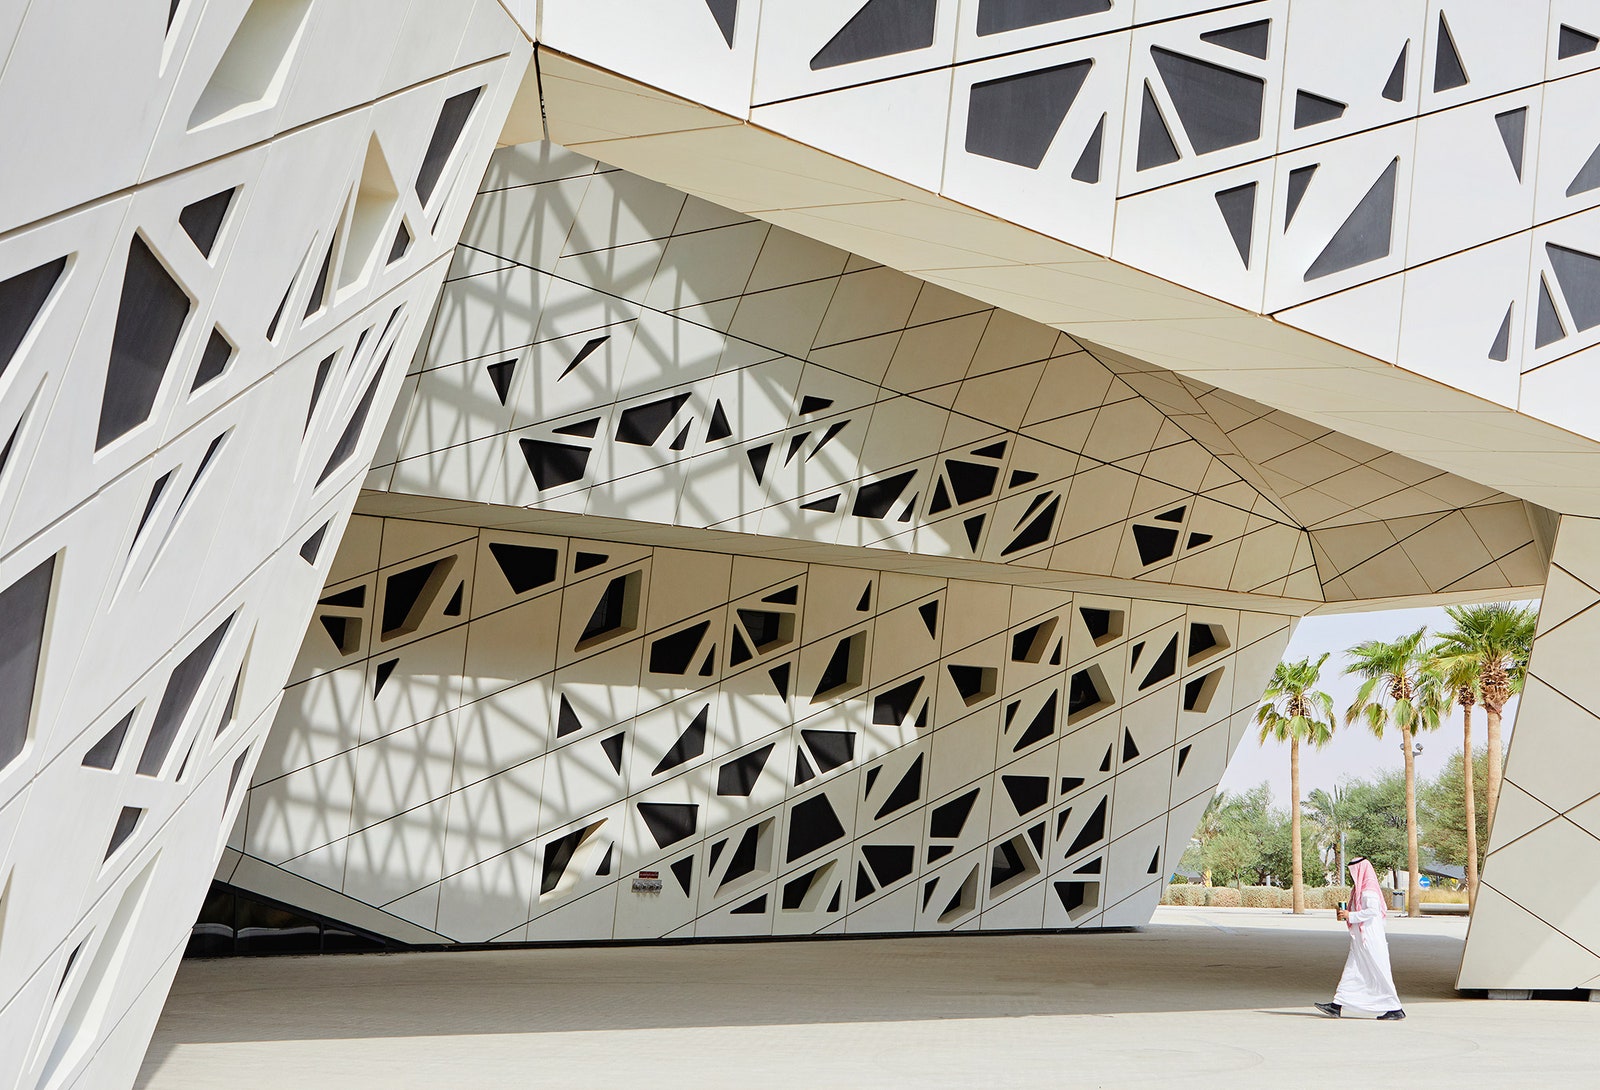 Исследовательский центр в ЭрРияде по проекту Захи Хадид здание в космическом стиле